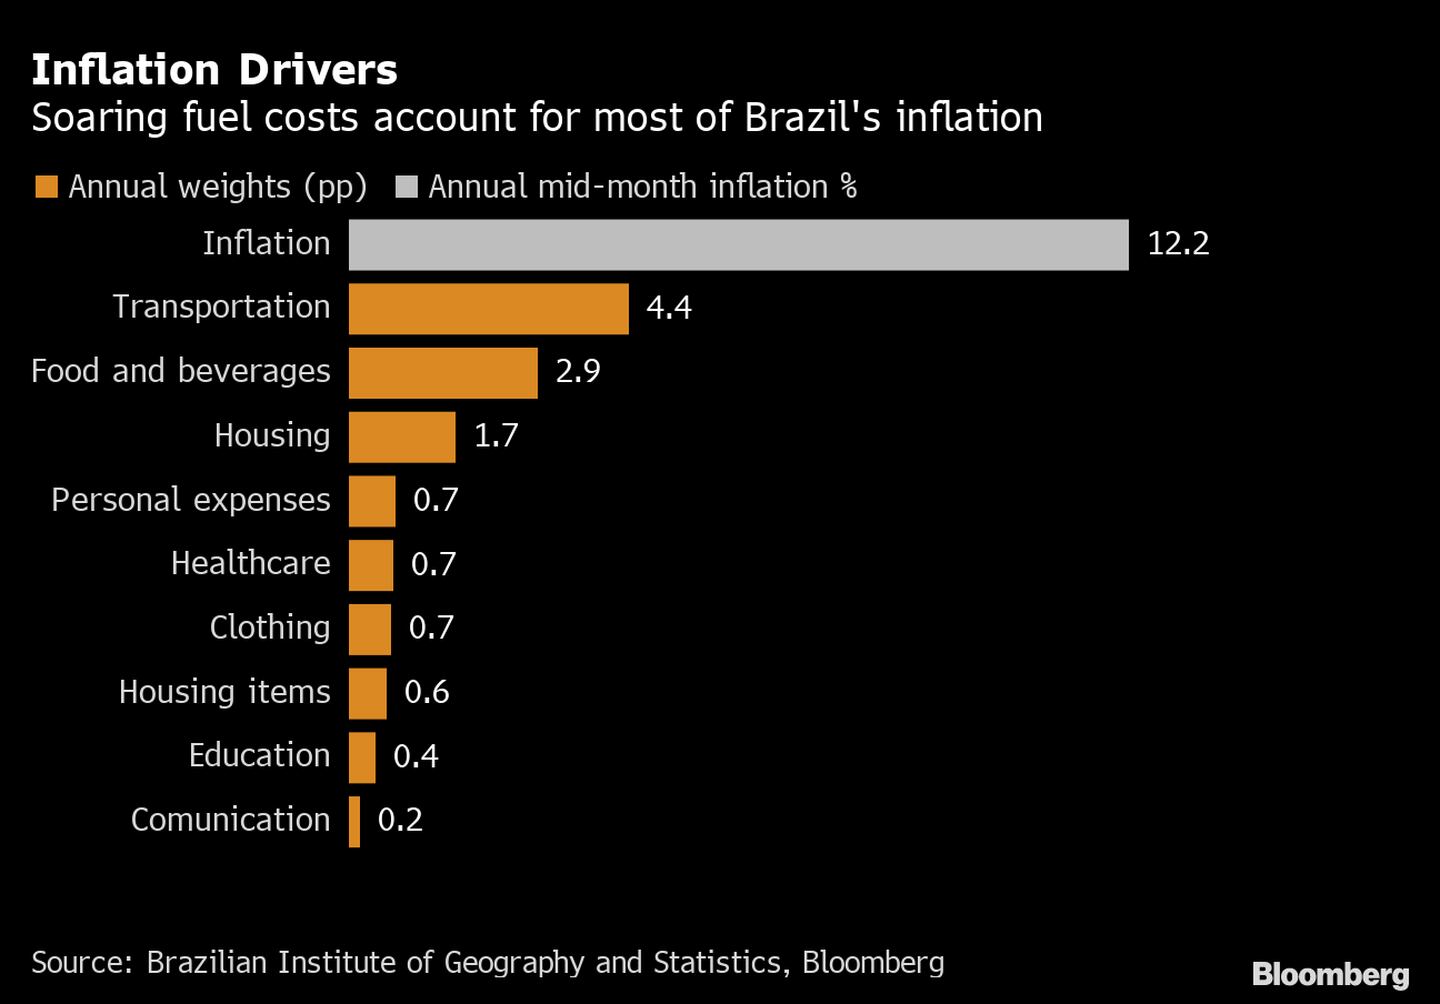 Costos de combustibles en aumento dan cuenta de la mayor parte de la inflación de Brasil. dfd